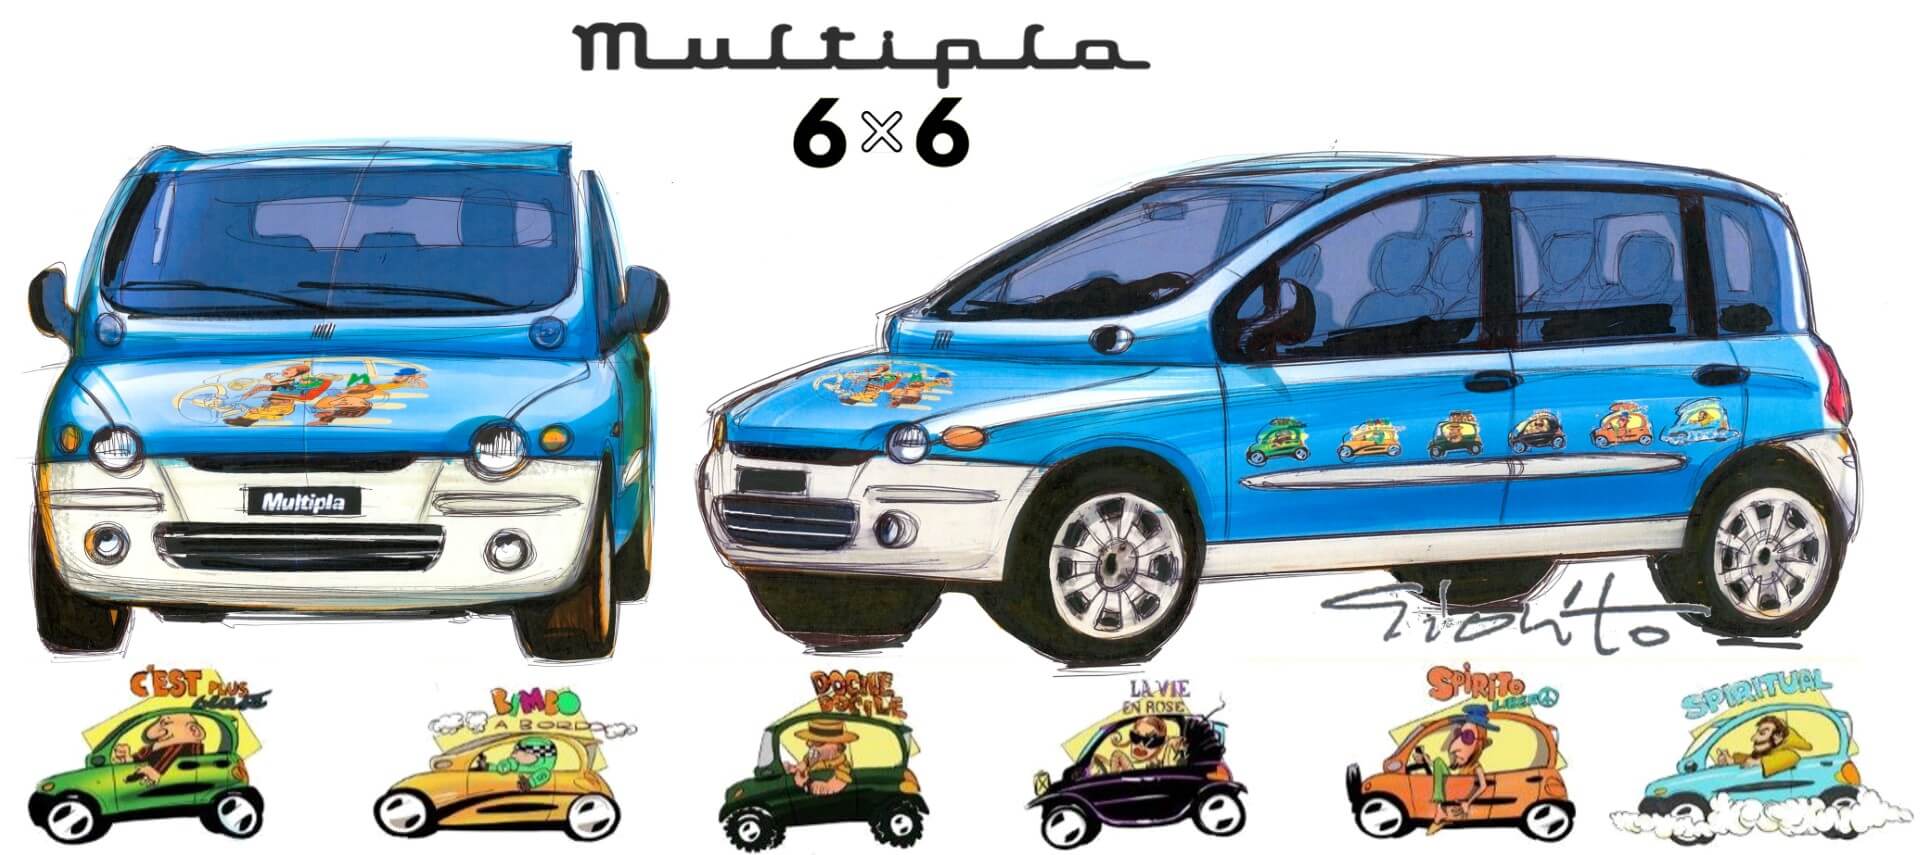 Desenho com duas vistas do Fiat Multipla 6x6 e as seis personagens